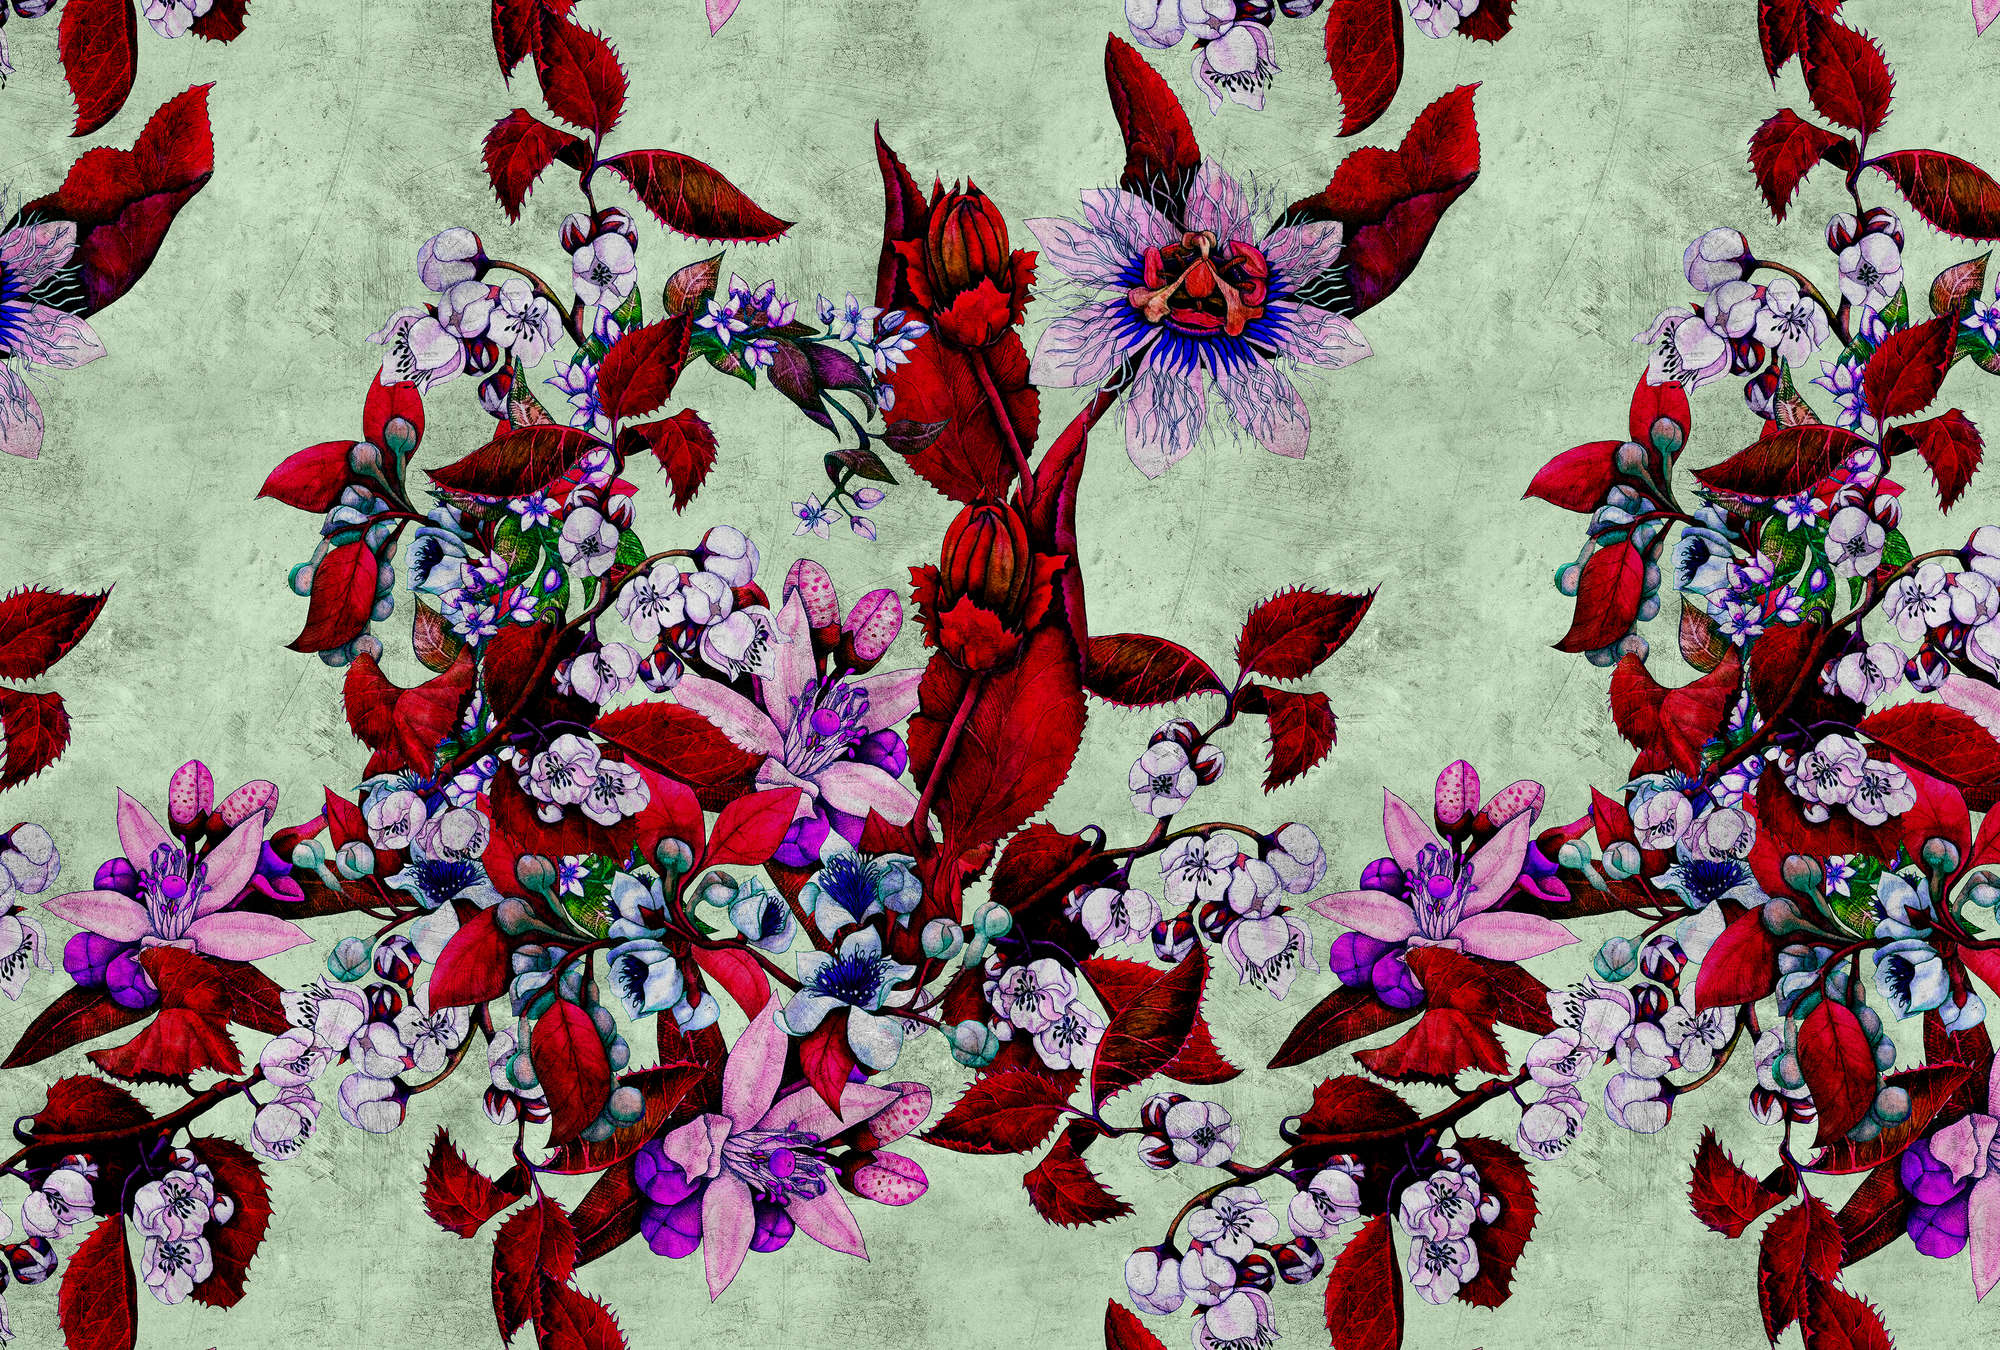             Tropical Passion 3 - Fototapete mit verspieltem Blütendesign- Kratzer Struktur – Grün, Rot | Perlmutt Glattvlies
        